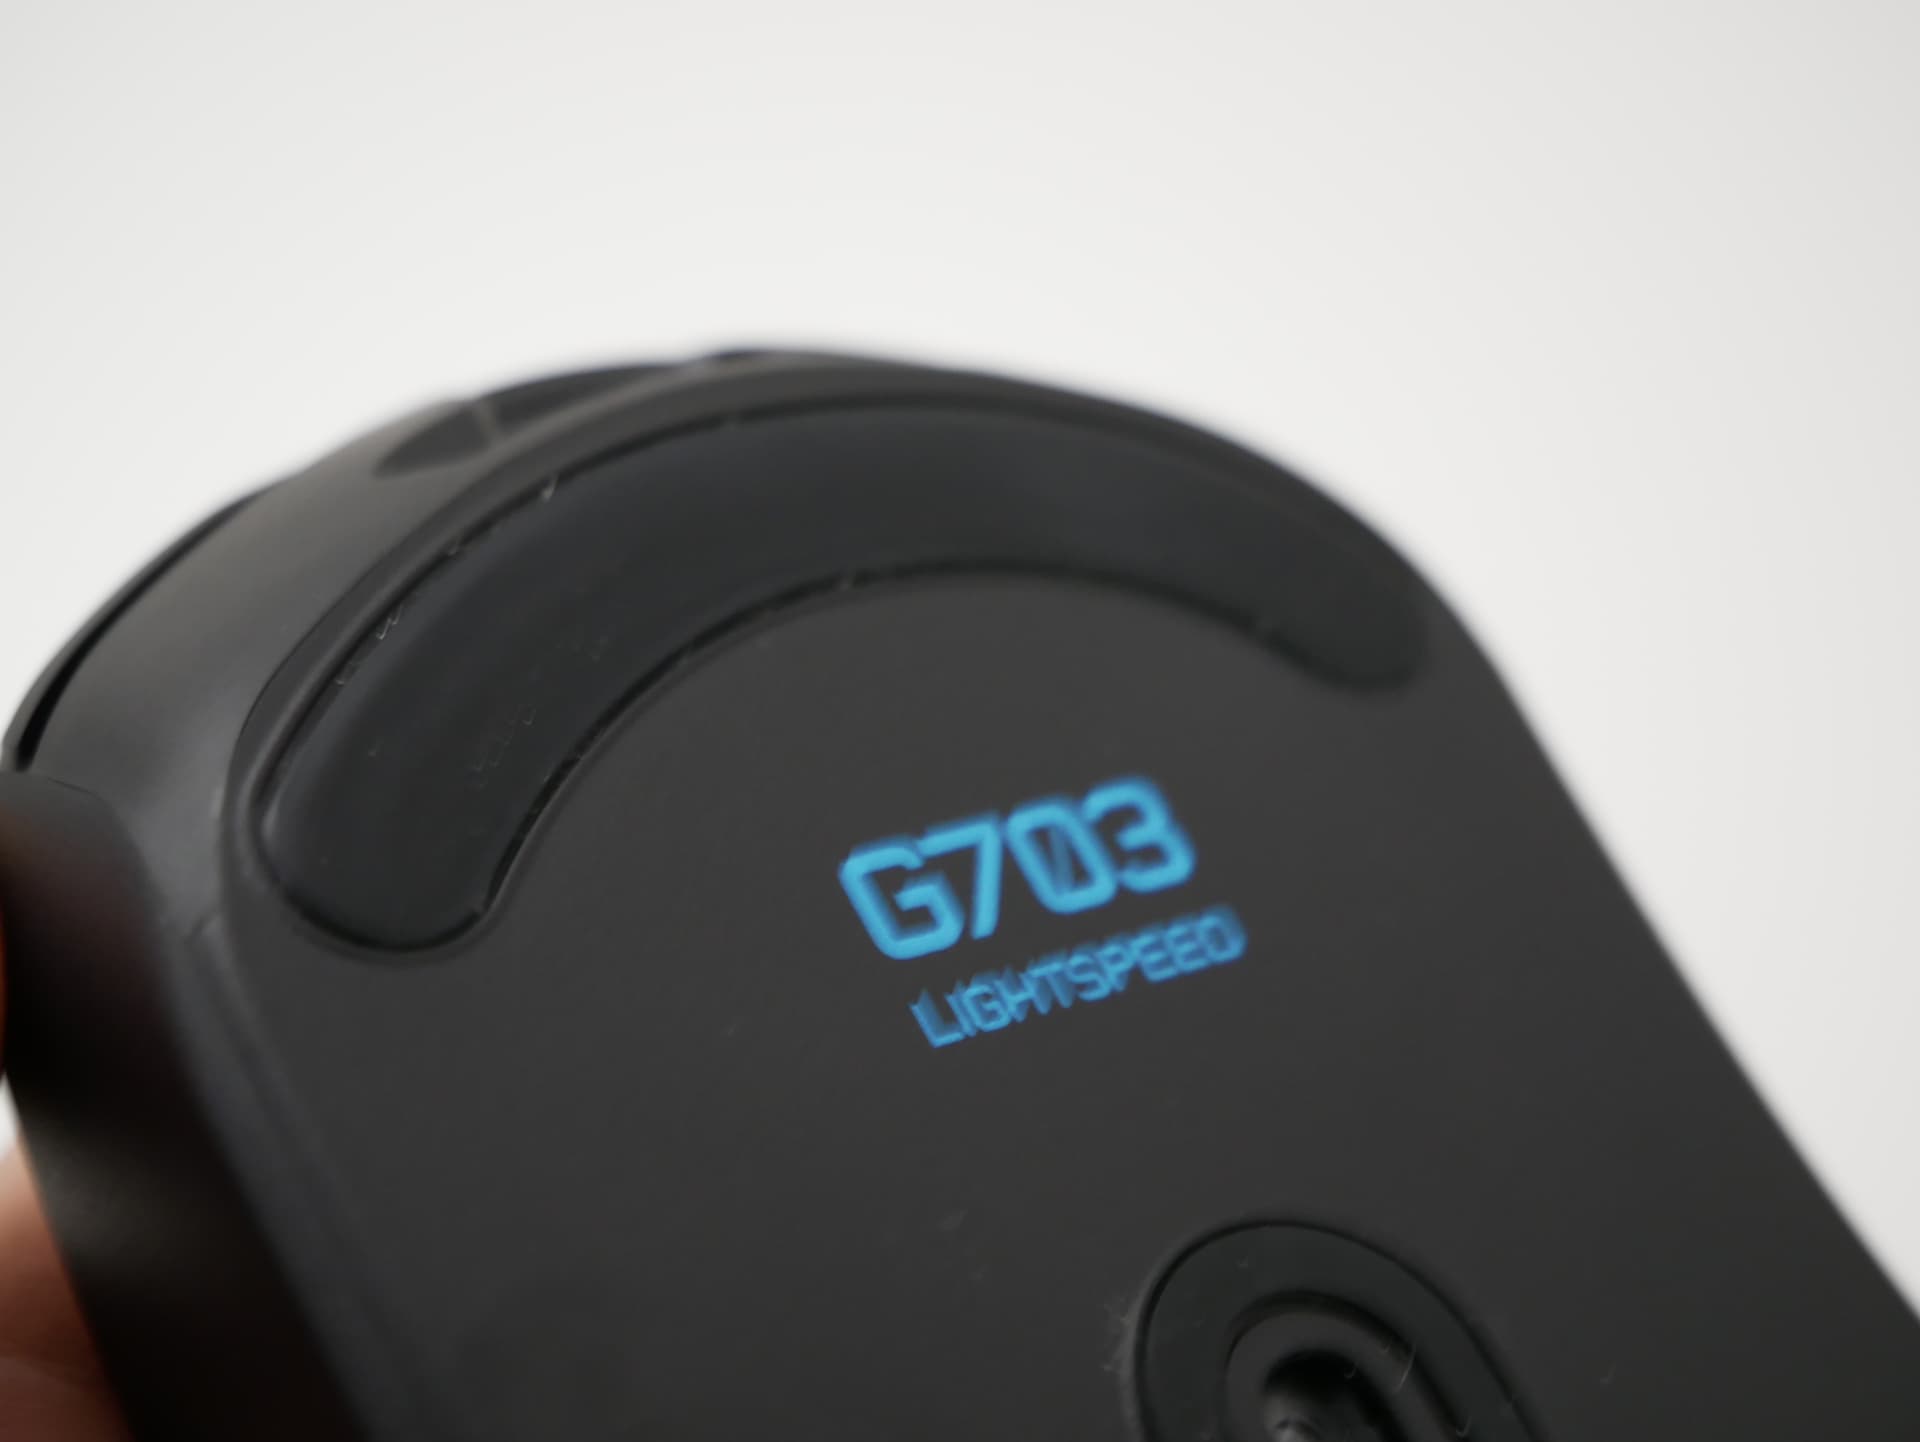 Logicool G703h レビュー Ie3 0クローンが好みならば持っておいて損はない無線ゲーミングマウス Dpqp